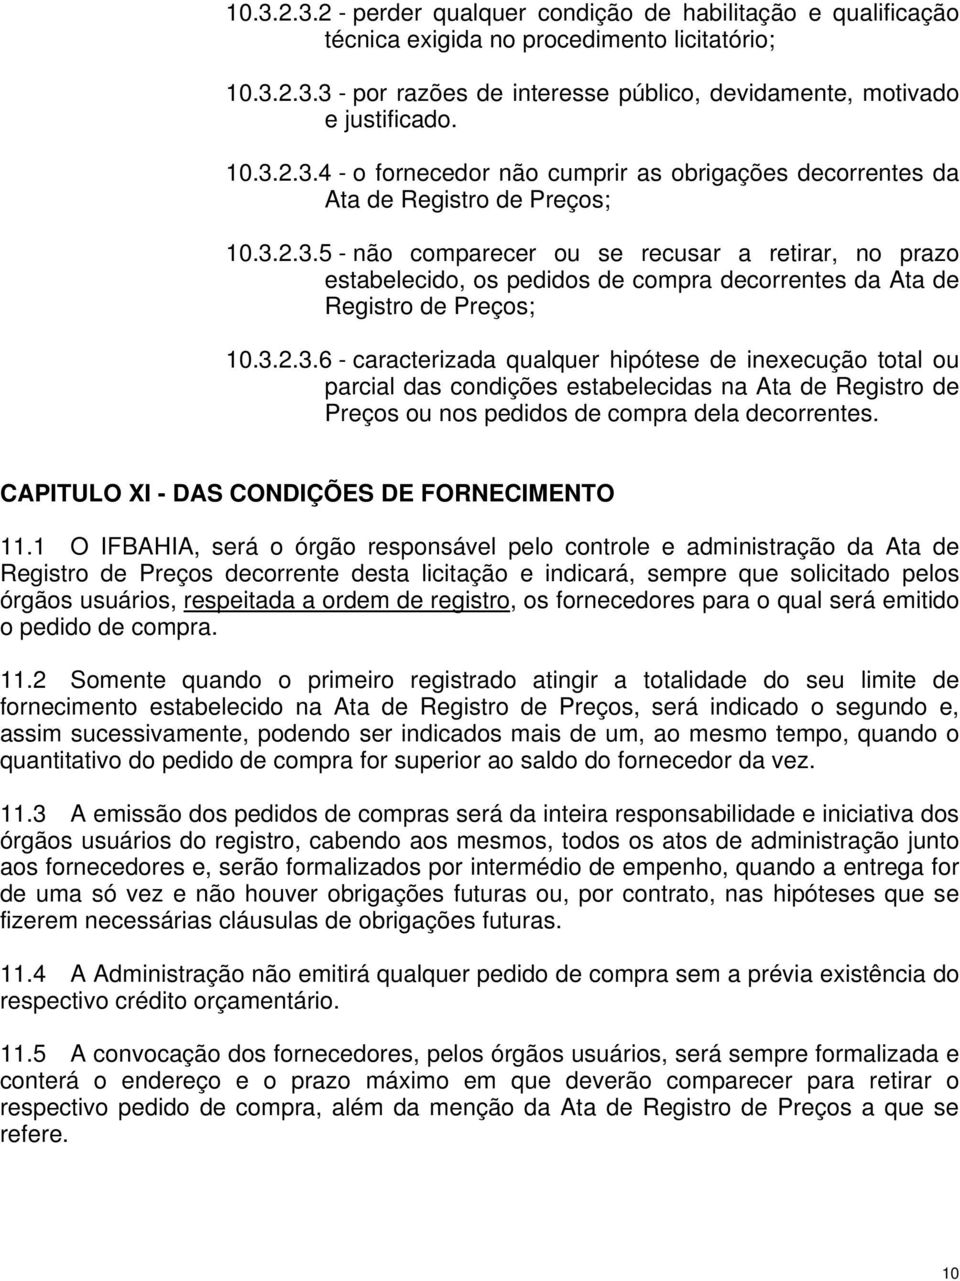 CAPITULO XI - DAS CONDIÇÕES DE FORNECIMENTO 11.